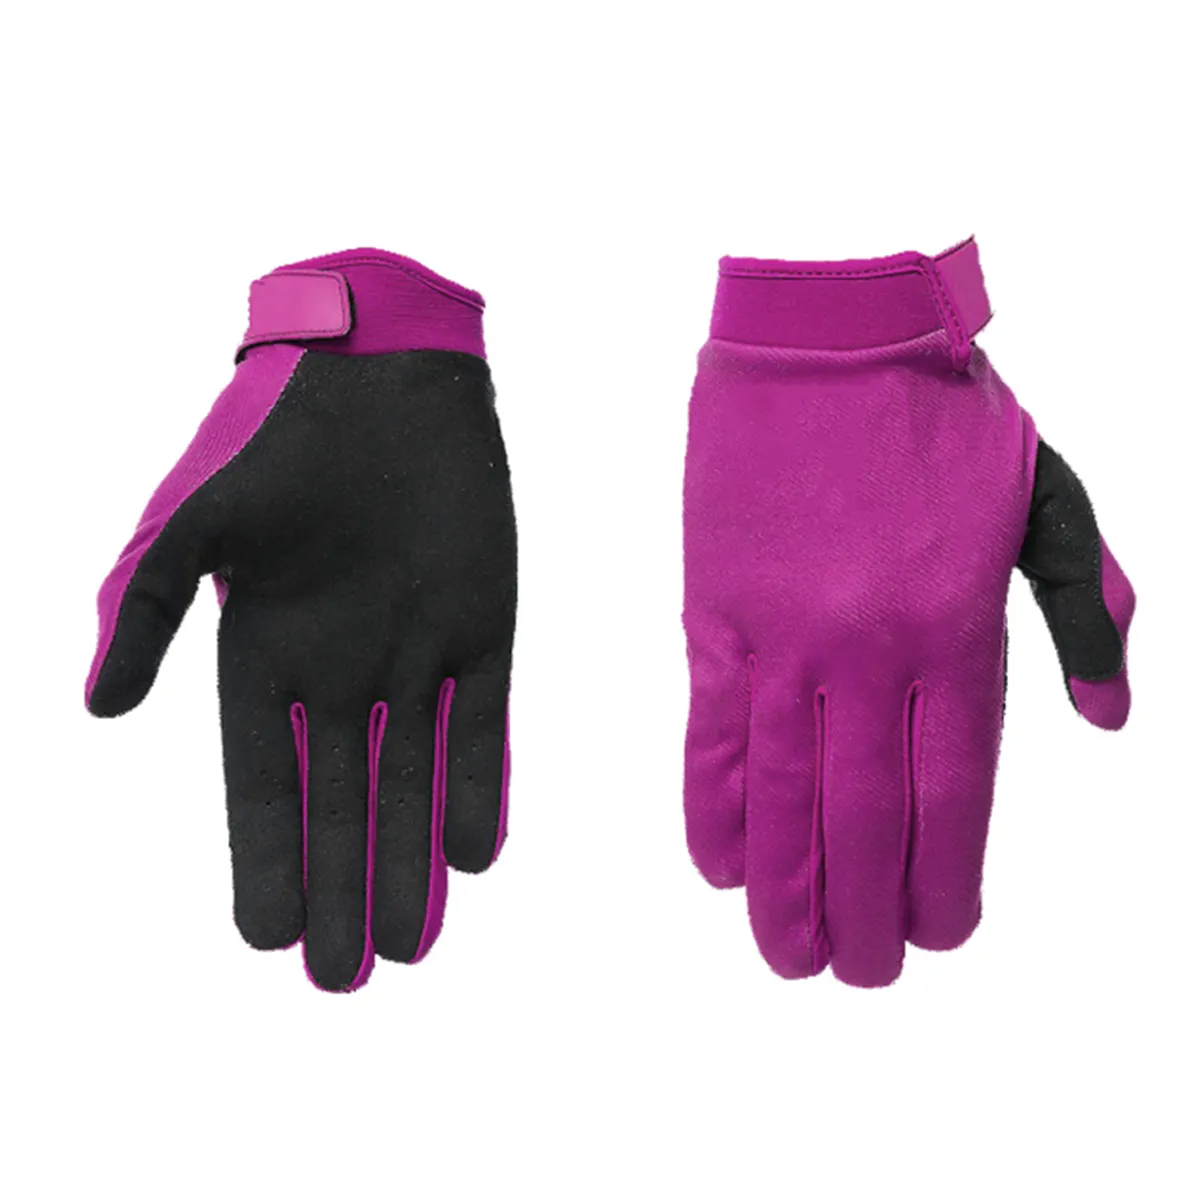 Wholesale Custom Motocross MX Cycling Gloves Full Finger Sports Motocross Gloves Design Best Racing Grip